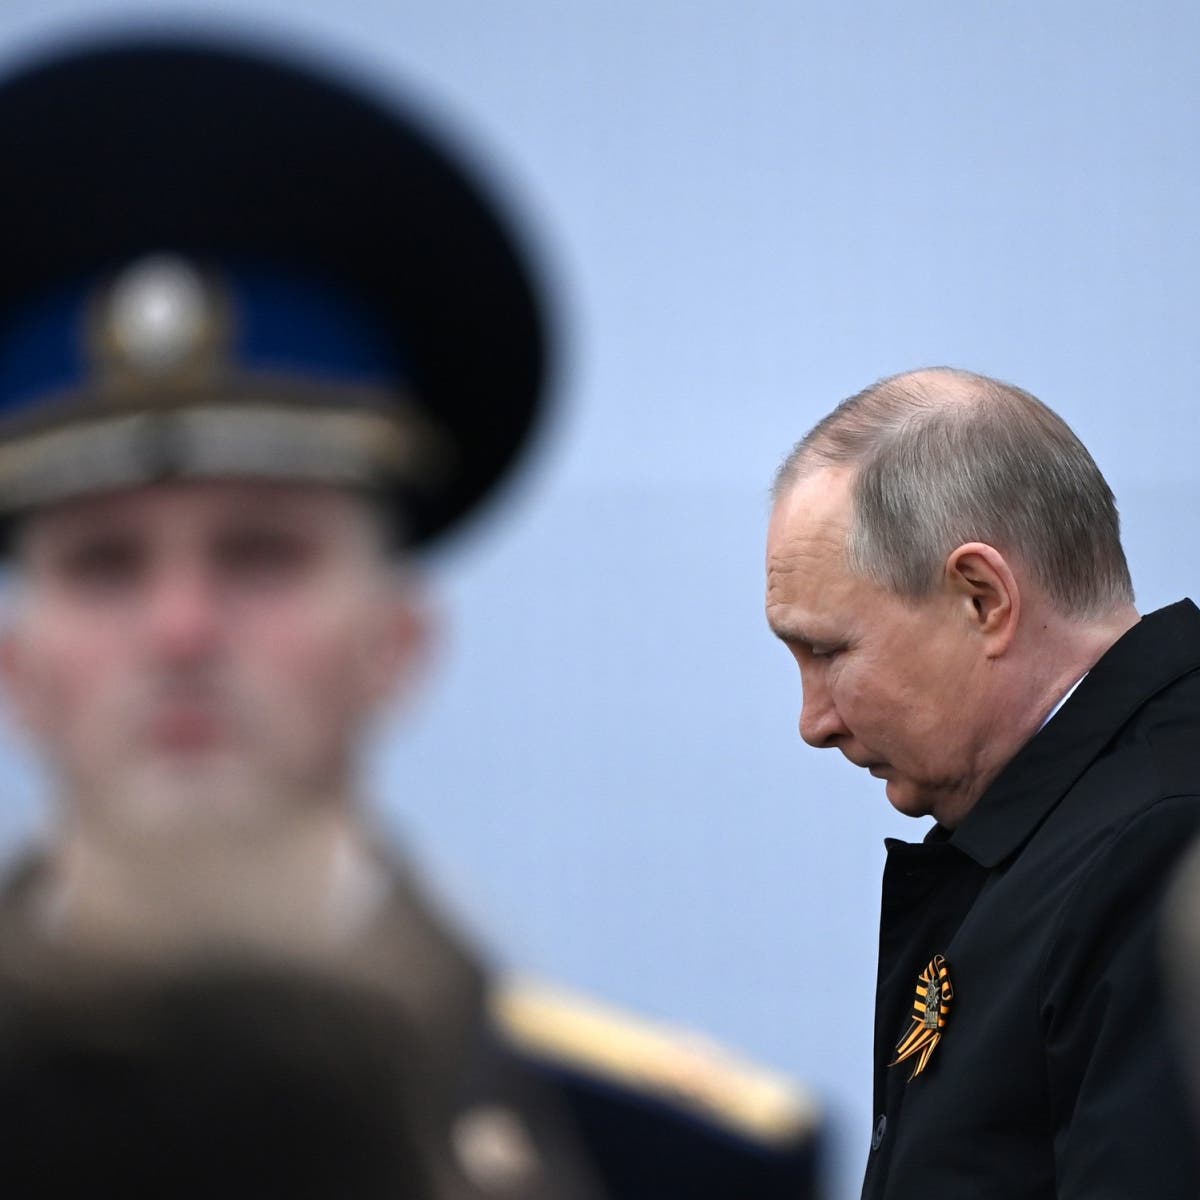 المخابرات الأميركية تؤكد: بوتين مريض وفراغ السلطة قد يكون خطيرا جدا